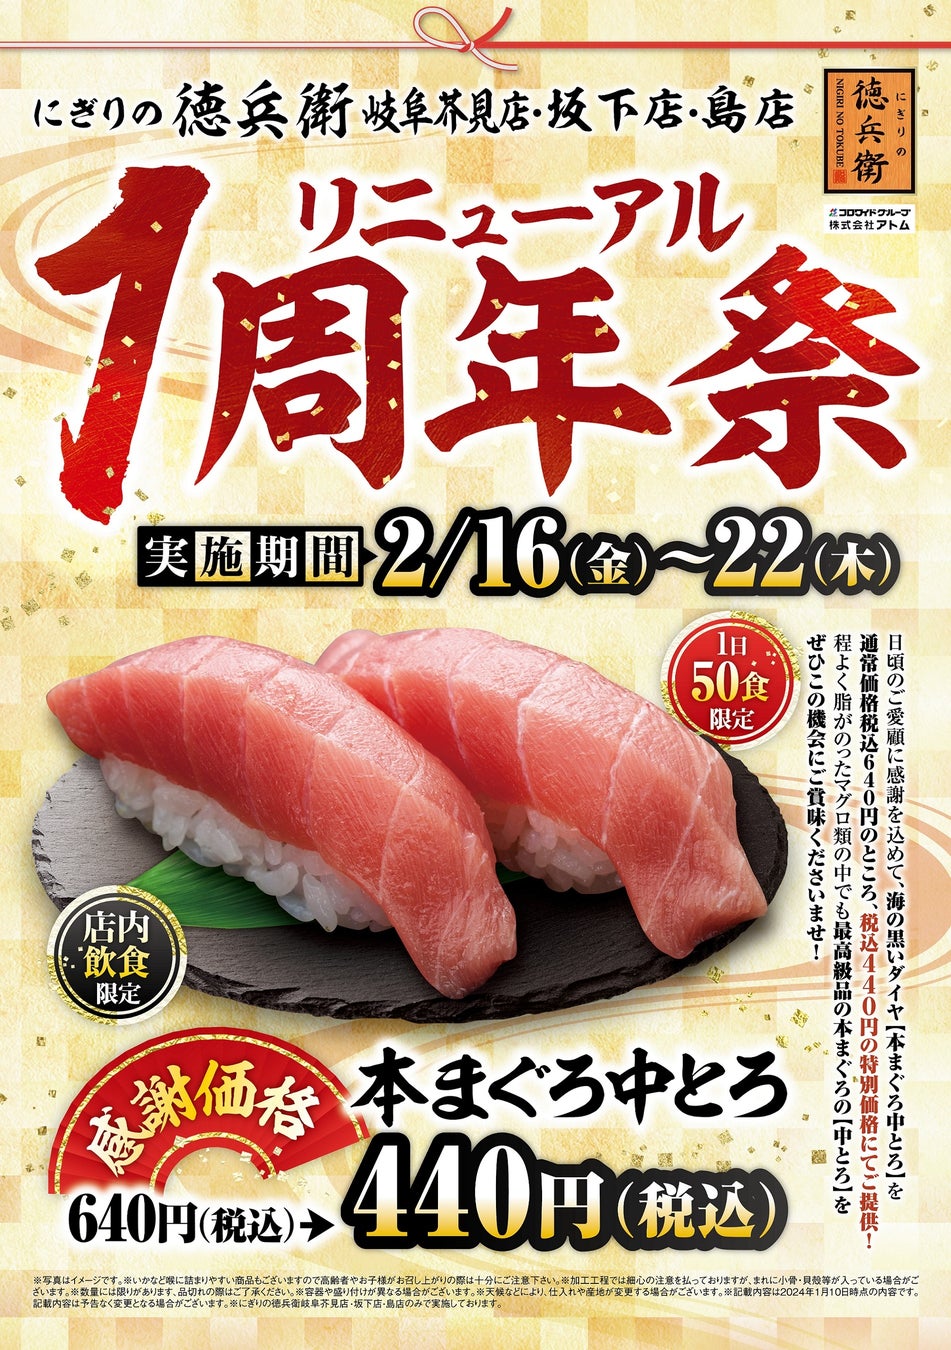 東京カレンダー、初の横浜特集を記念した特別表紙バージョン『横浜カレンダー』を2/21(水)に発売